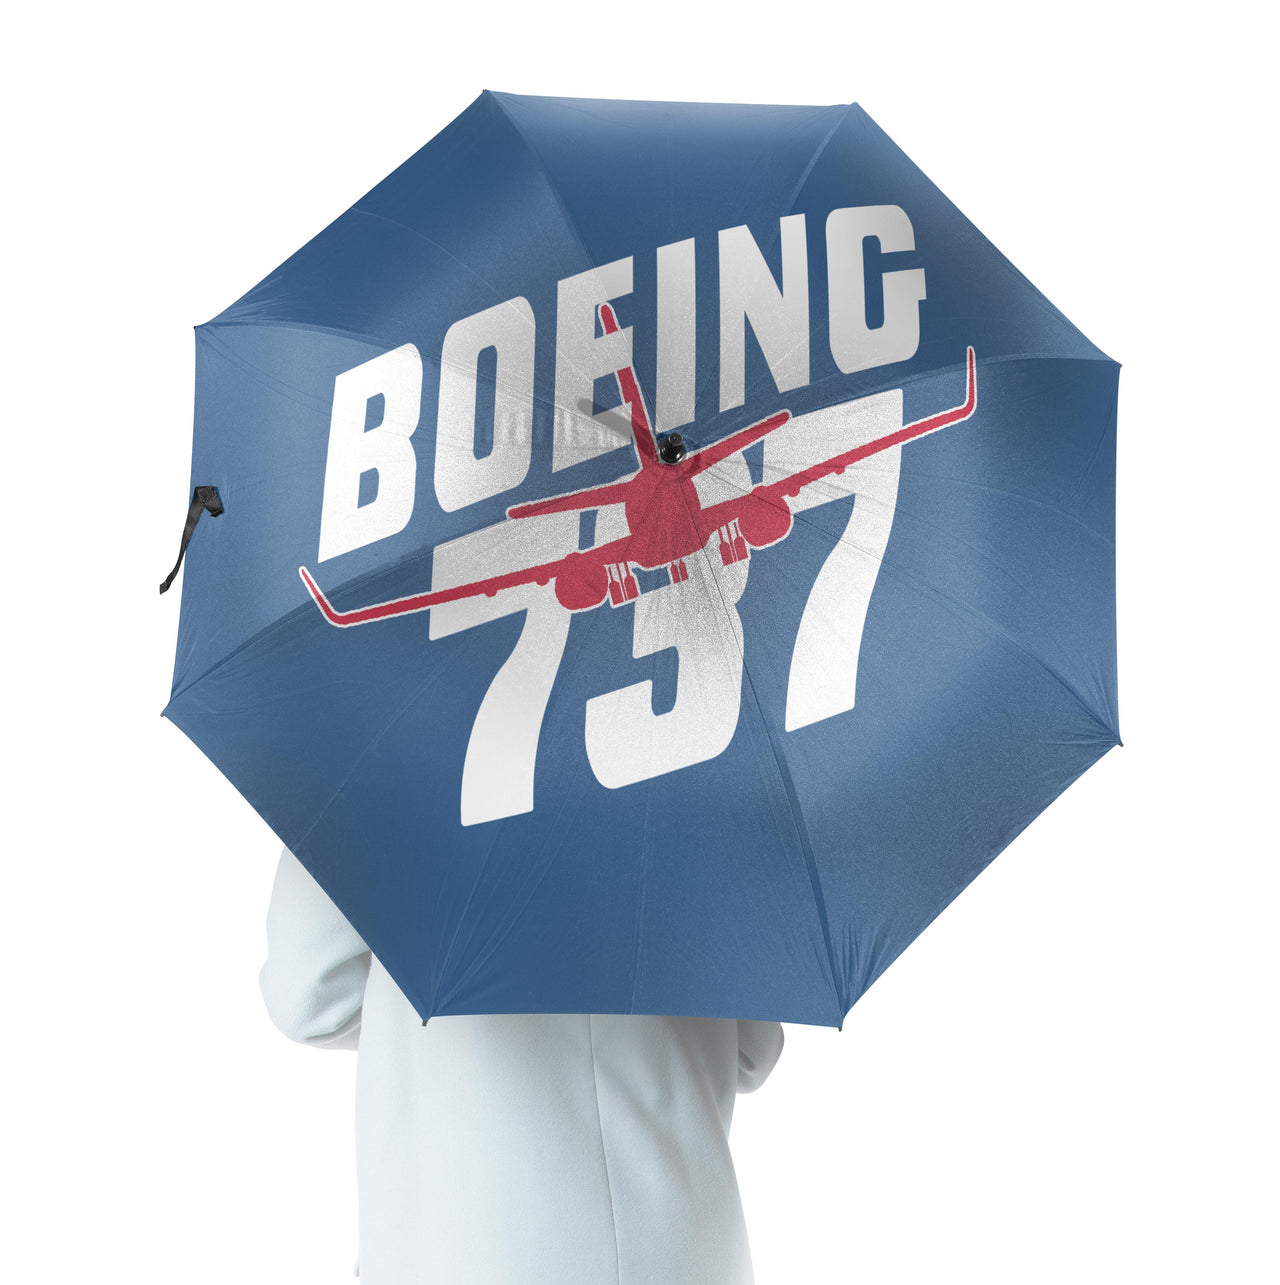 Amazing Boeing 737 Designed Umbrella